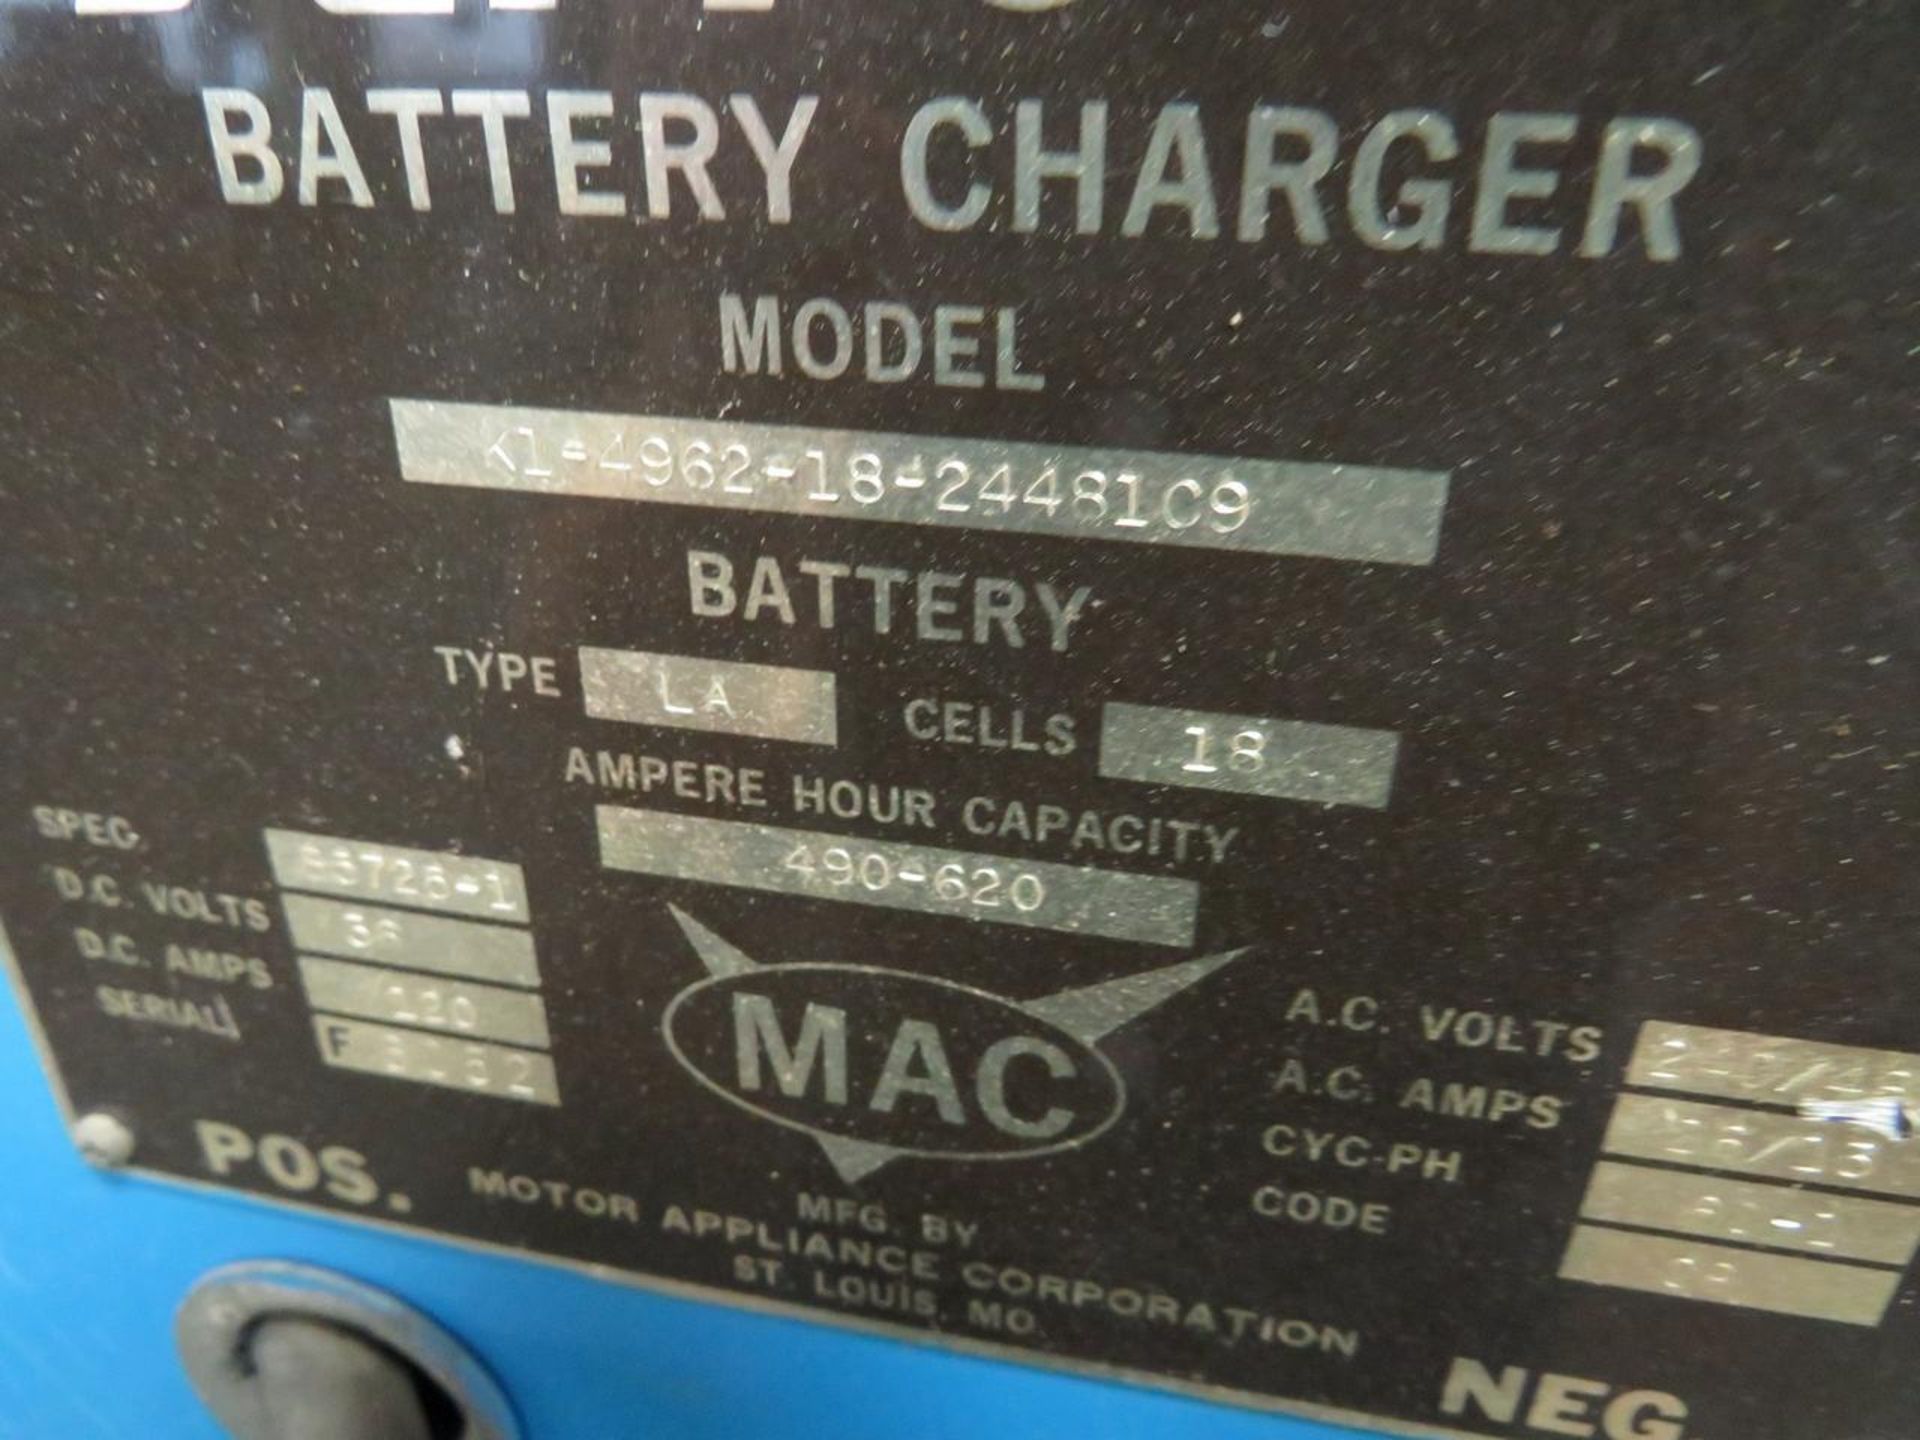 Ferro K1-4962-18-24481C9 36V Battery Charger - Image 5 of 6